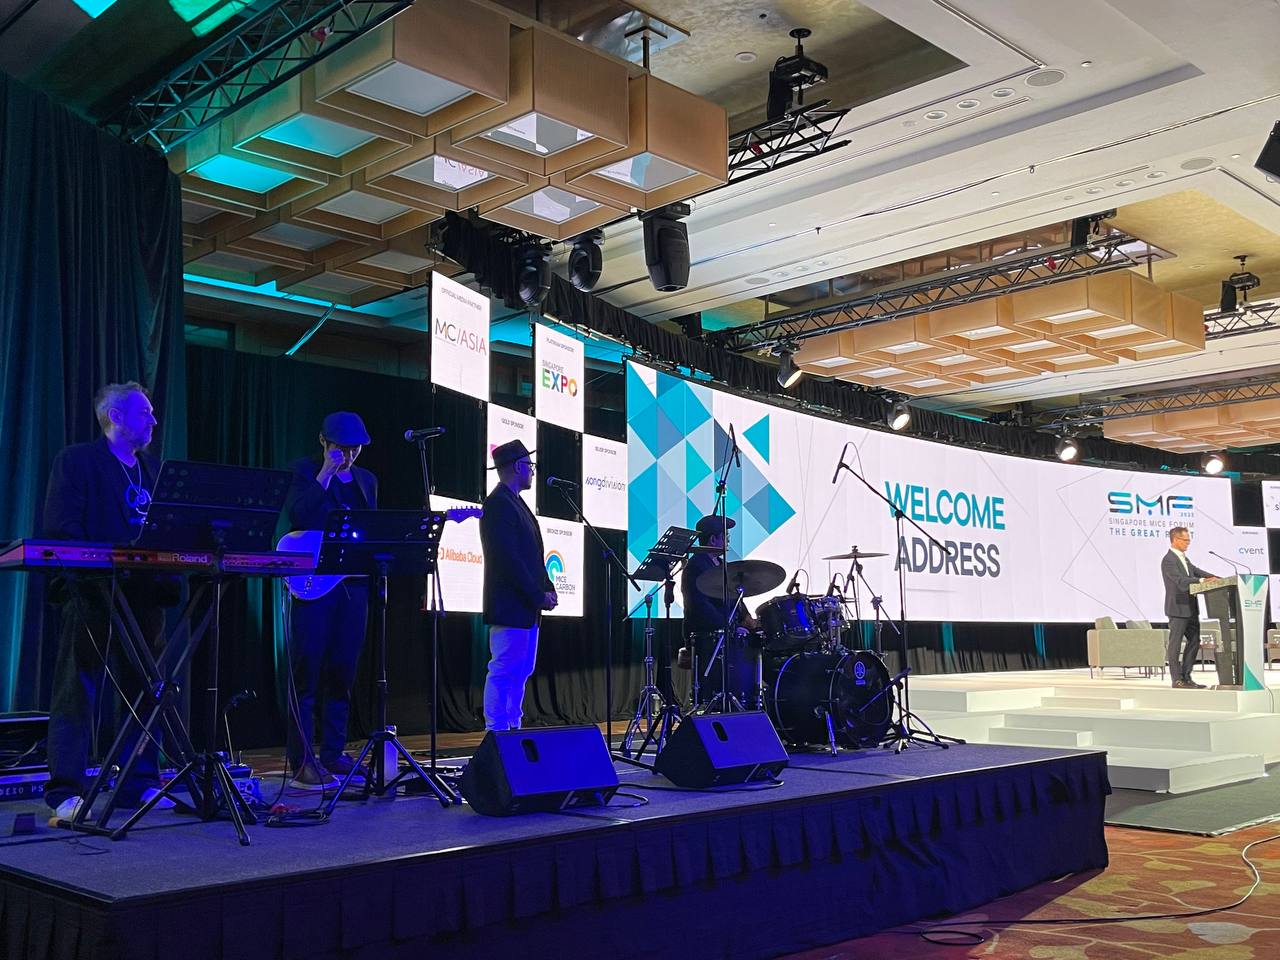 Singapore MICE Forum 2023 With SACEOS